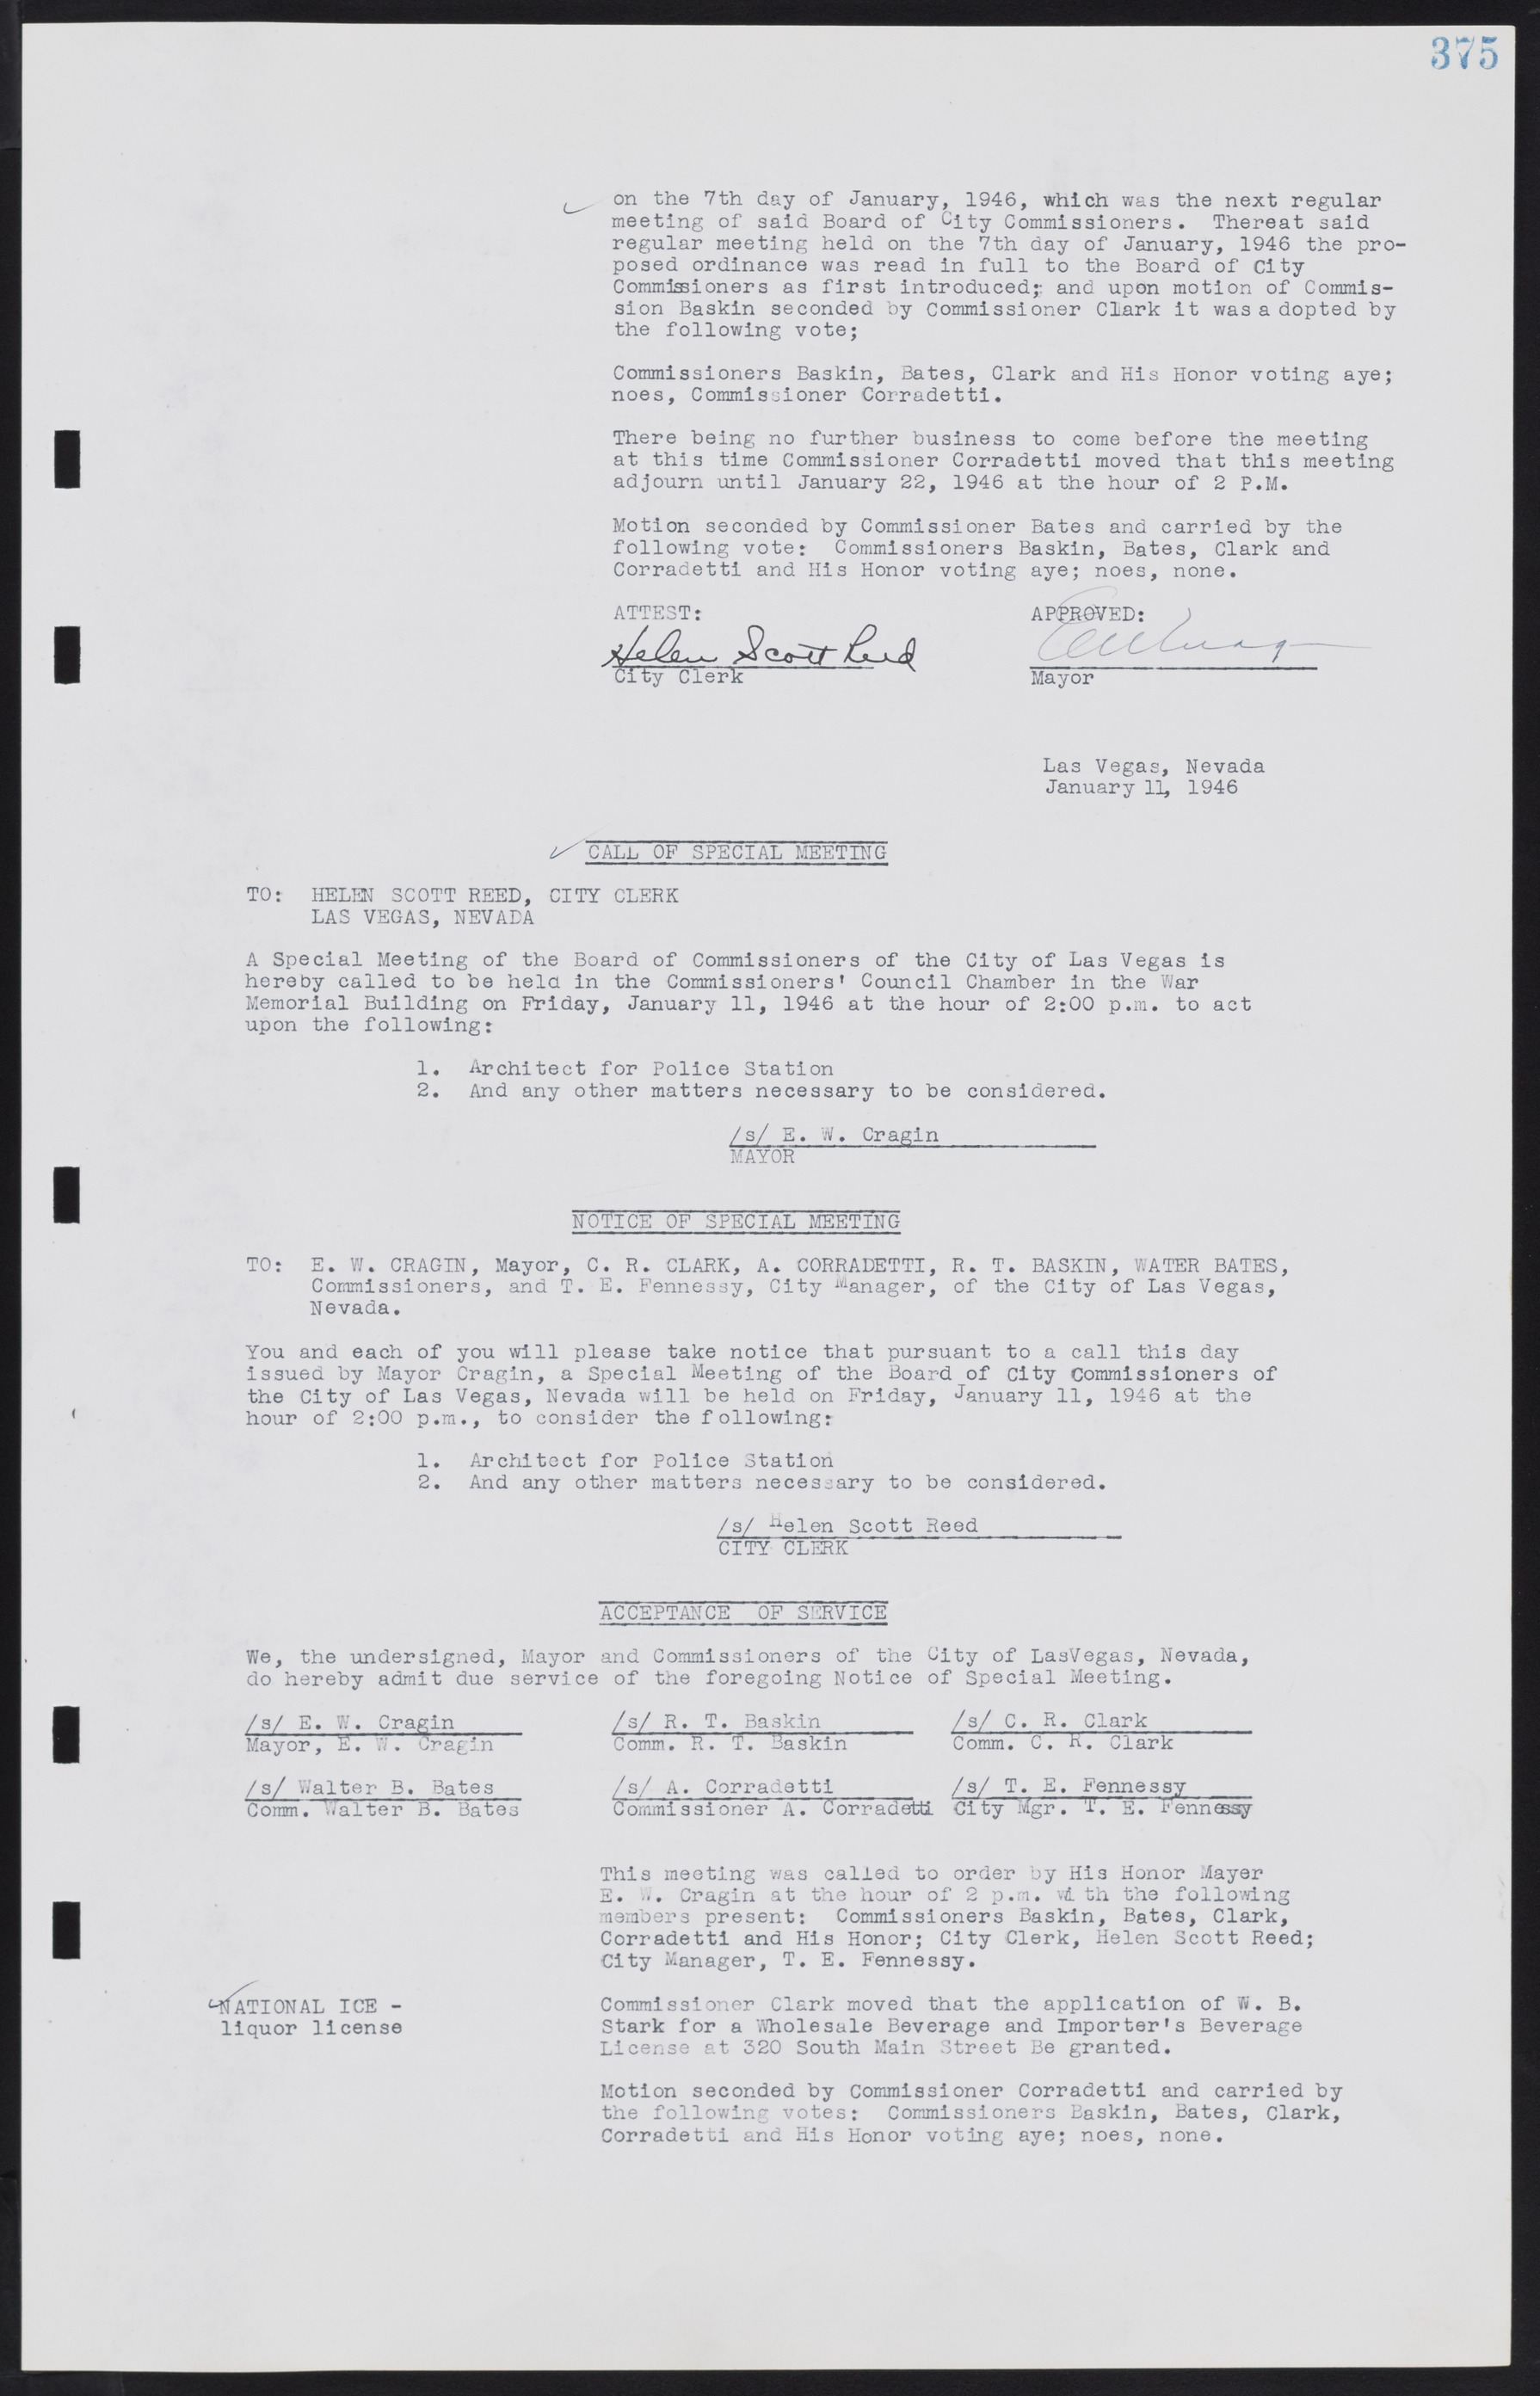 Las Vegas City Commission Minutes, August 11, 1942 to December 30, 1946, lvc000005-402